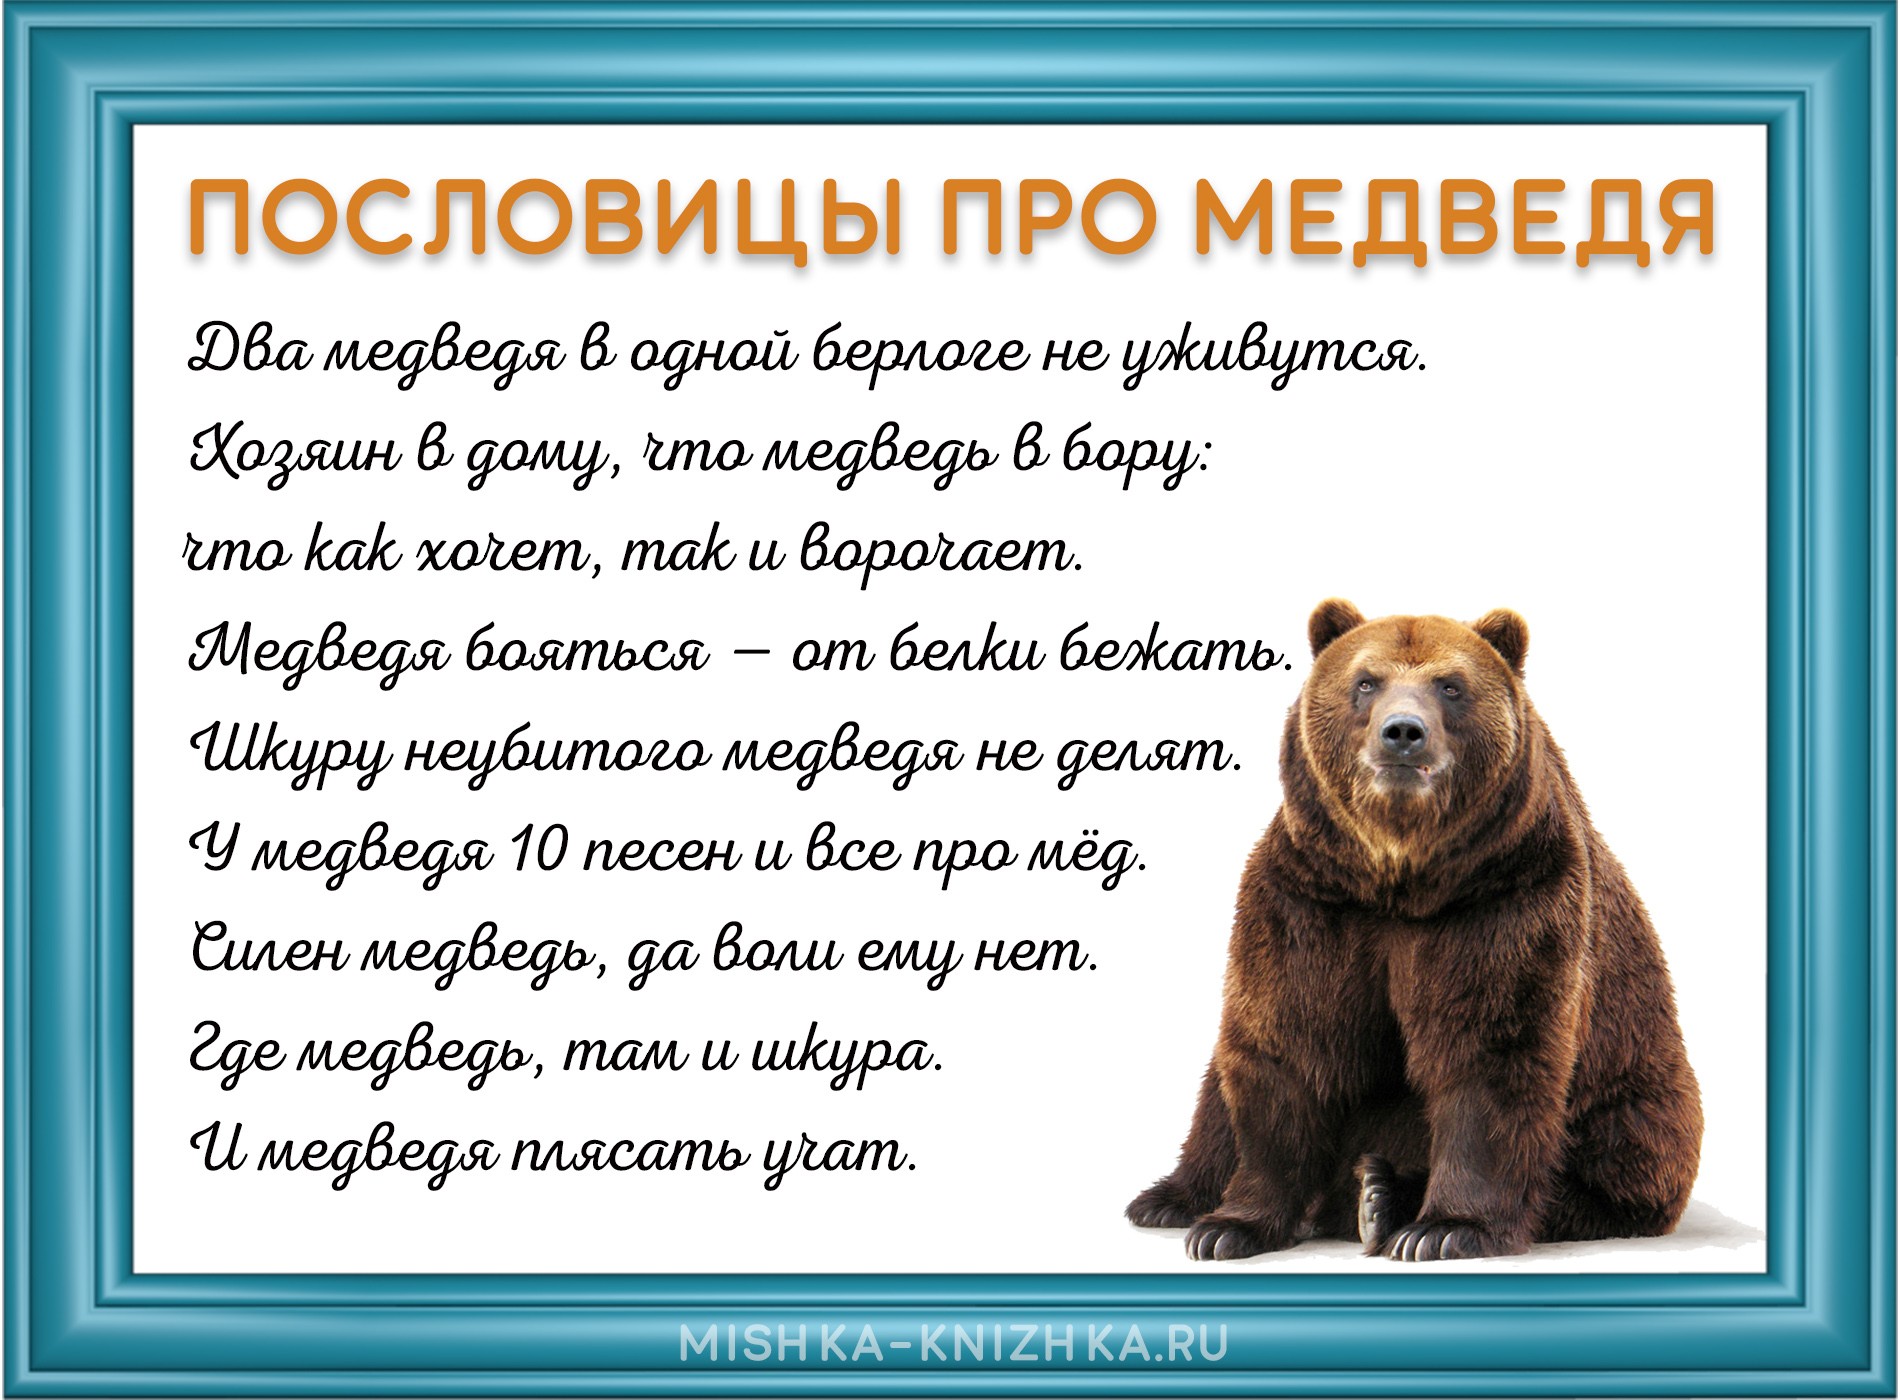 картинка с пословицами про медведя